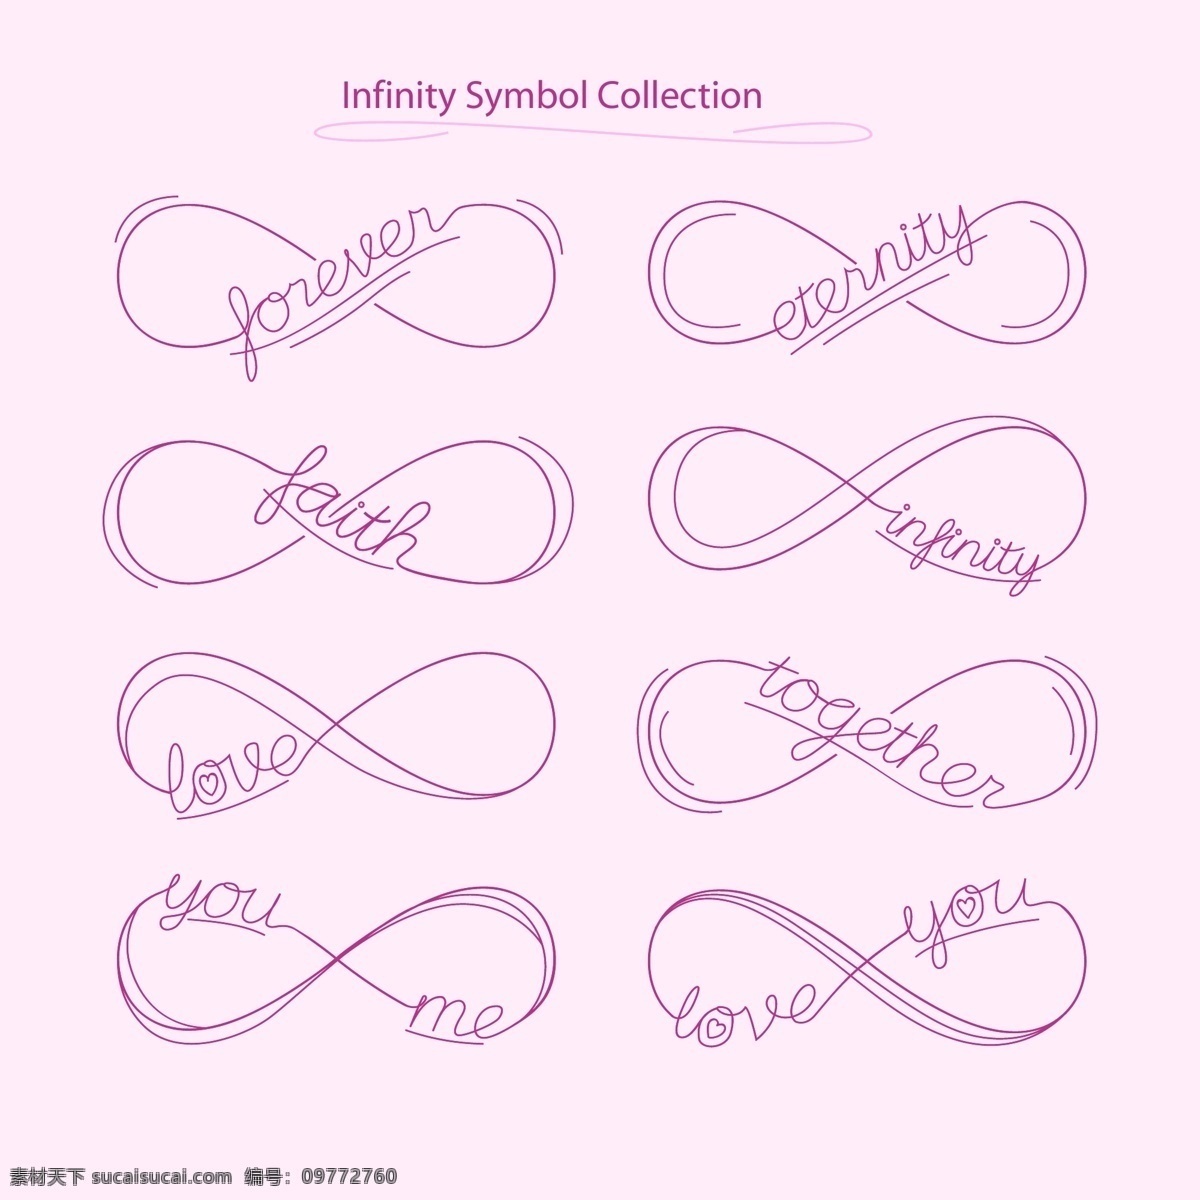 手绘 线条 无限 标志 简约 紫色 家庭 矢量素材 英文 无限标志 ai素材